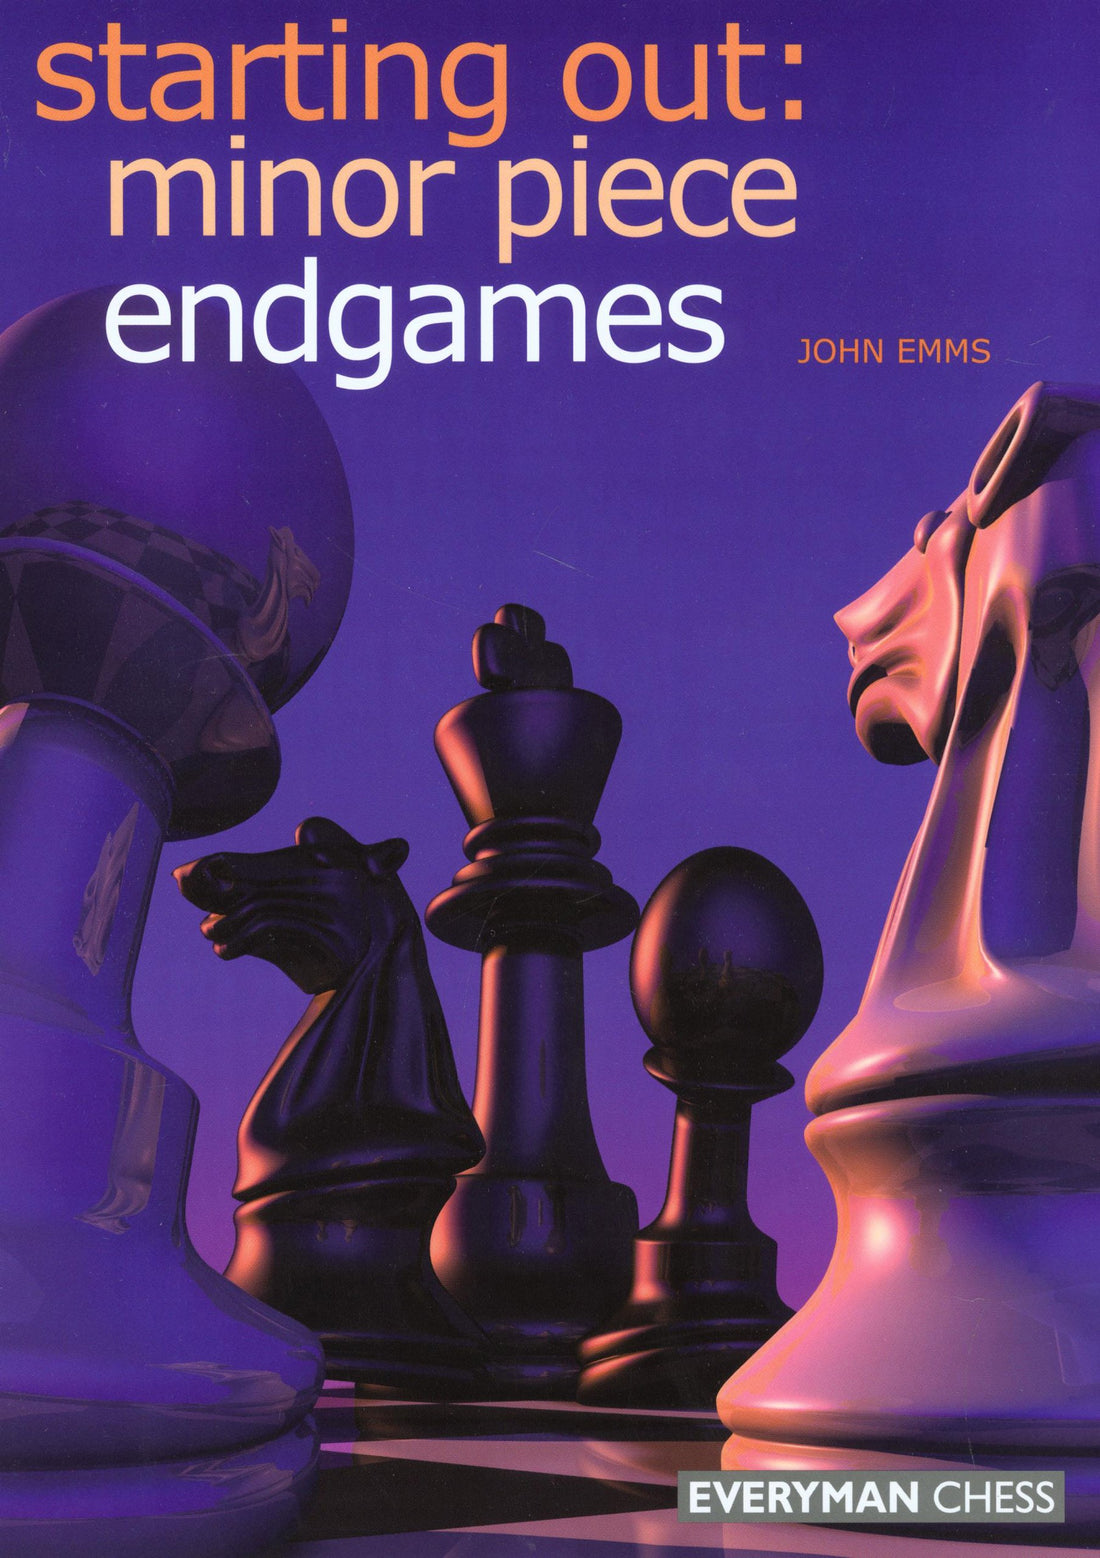 EndGames